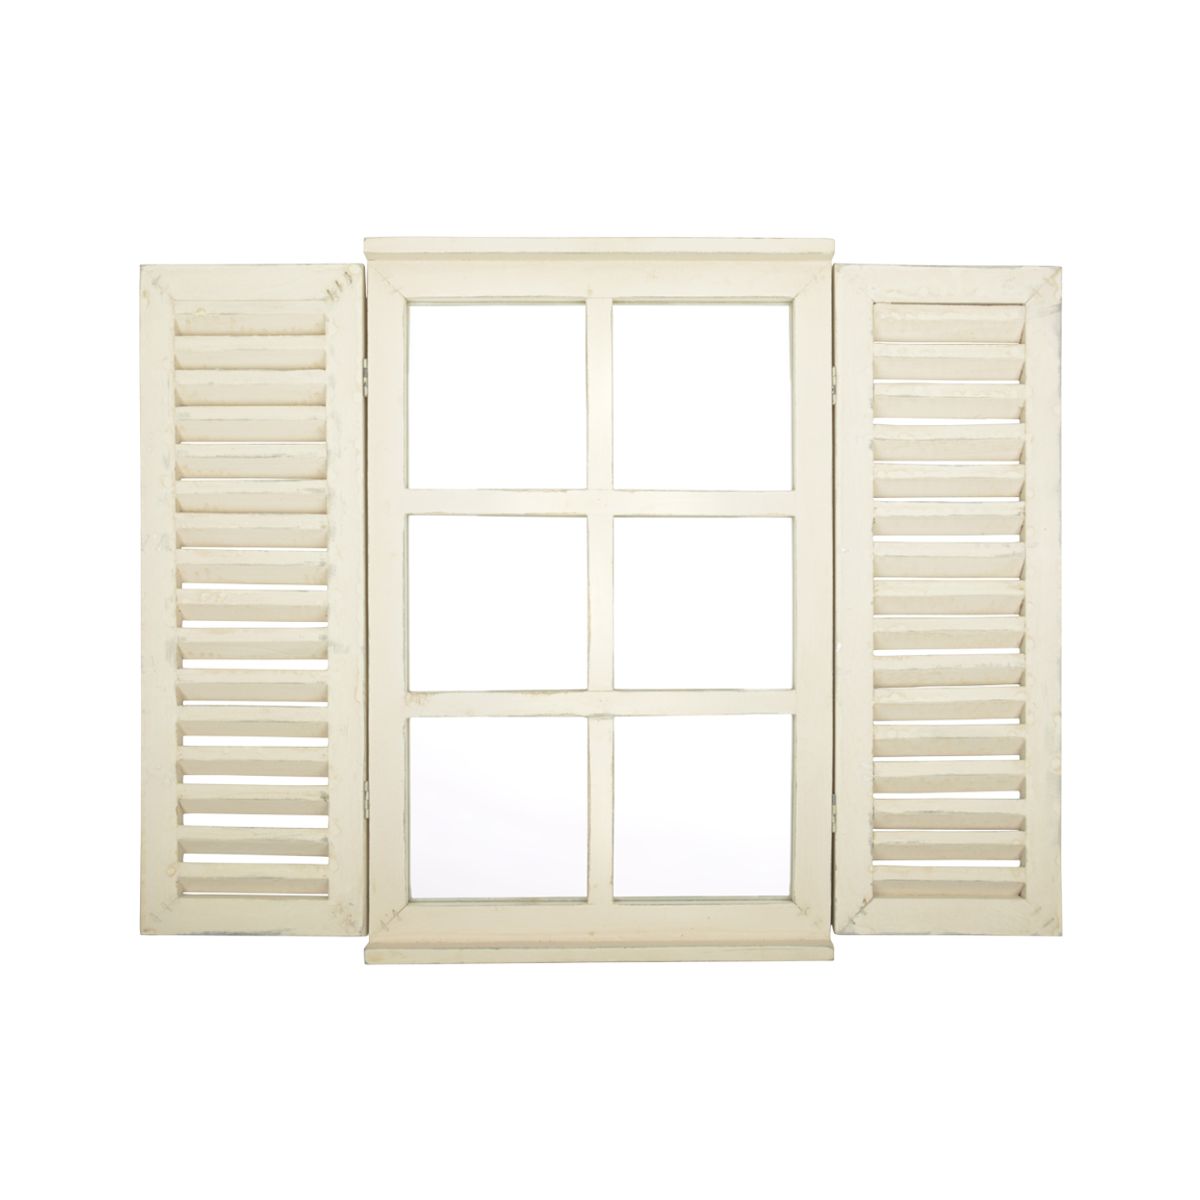 Oglinda Window with Doors Esschert Design